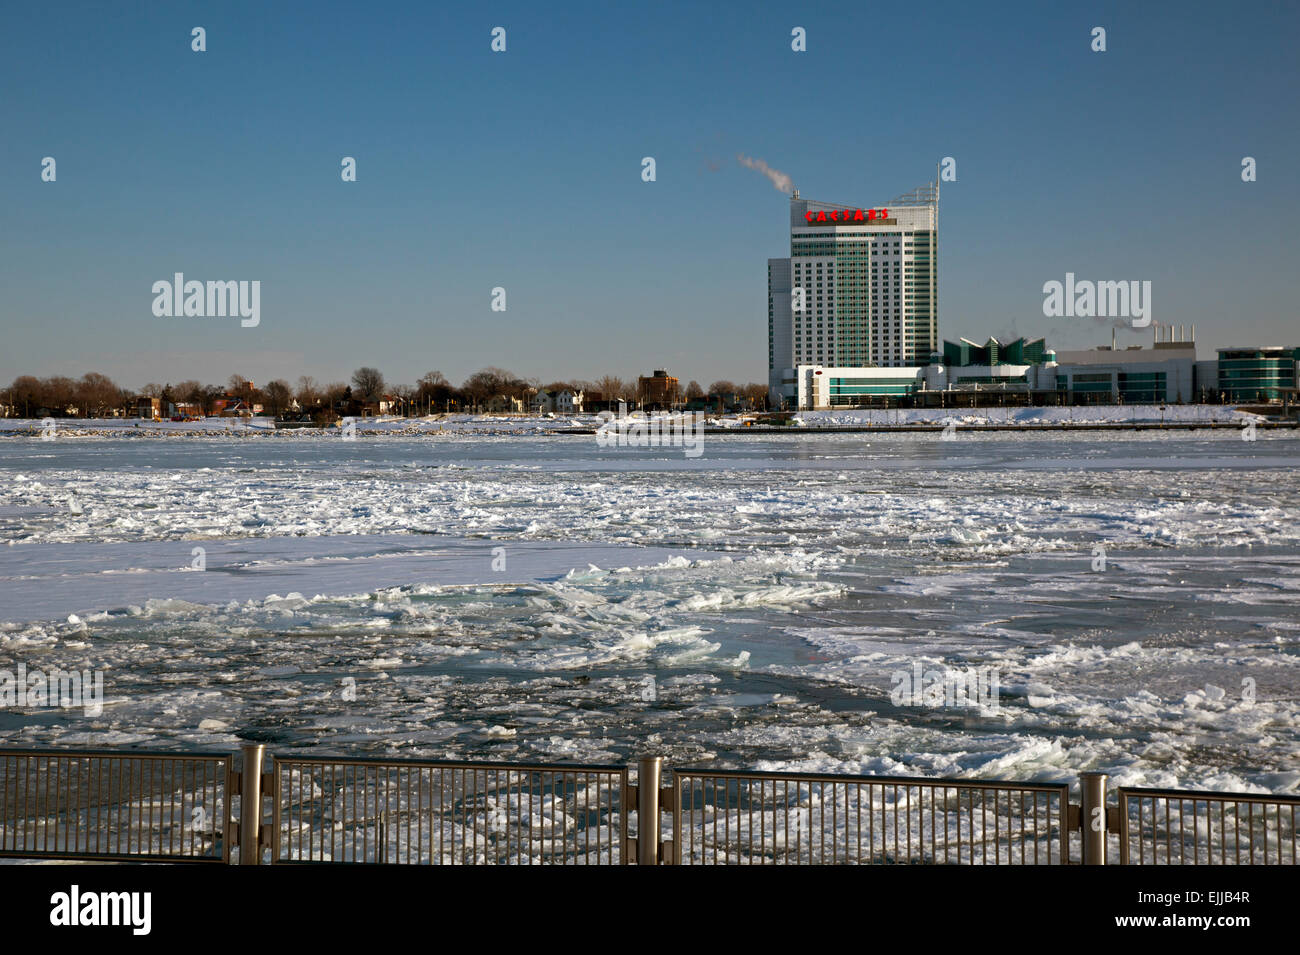 Detroit, Michigan - Il fiume Detroit in inverno, fotografato a Detroit. Caesars Windsor casino è al di là del fiume. Foto Stock